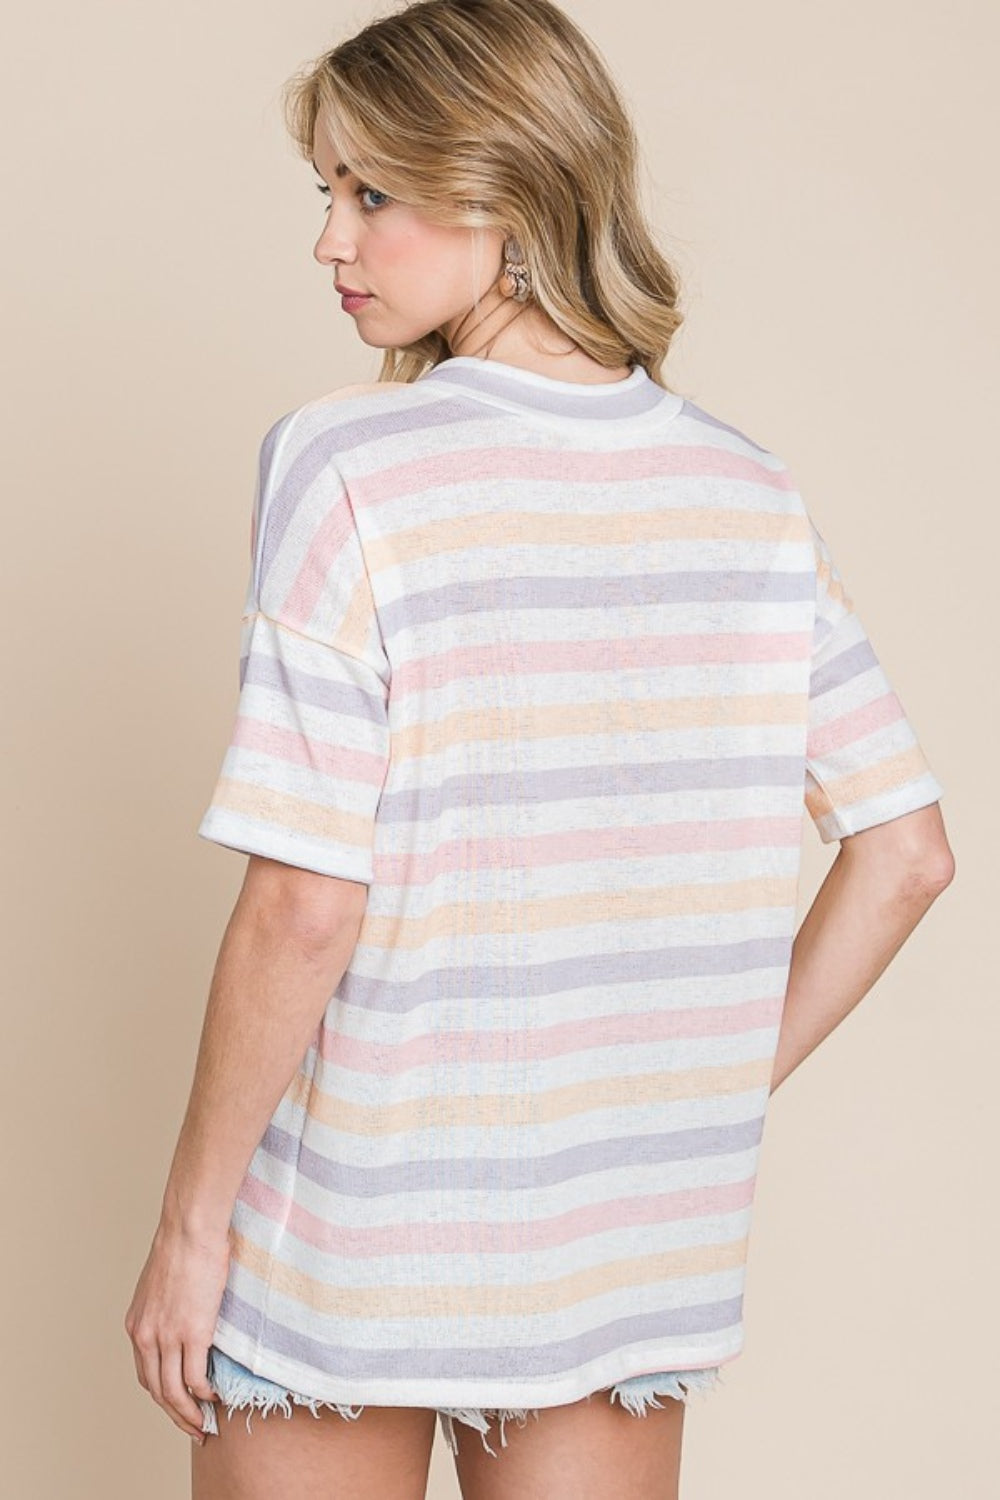 BOMBOM Striped V-Neck Short Sleeve T-Shirt Trendsi